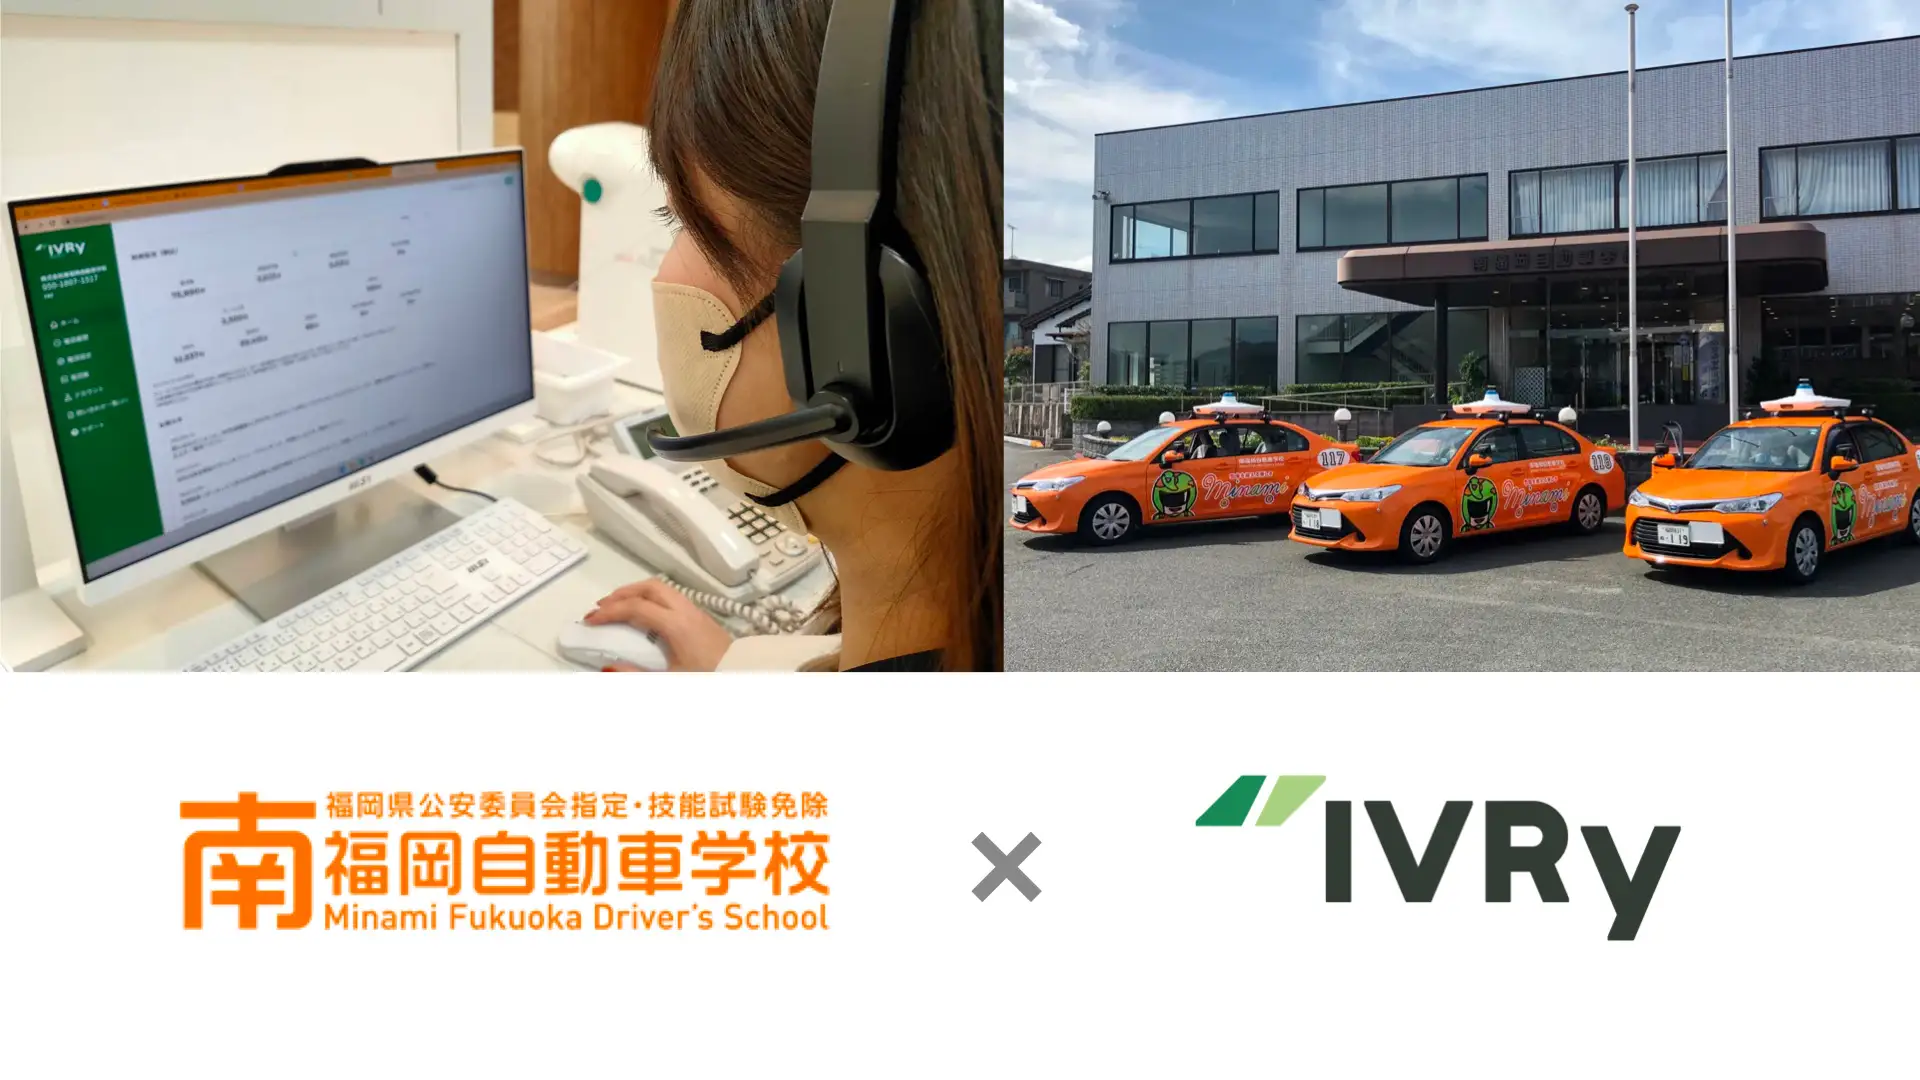 南福岡自動車学校、業界の課題である人員不足対策として、電話自動応答サービス「IVRy」を導入しDXを推進